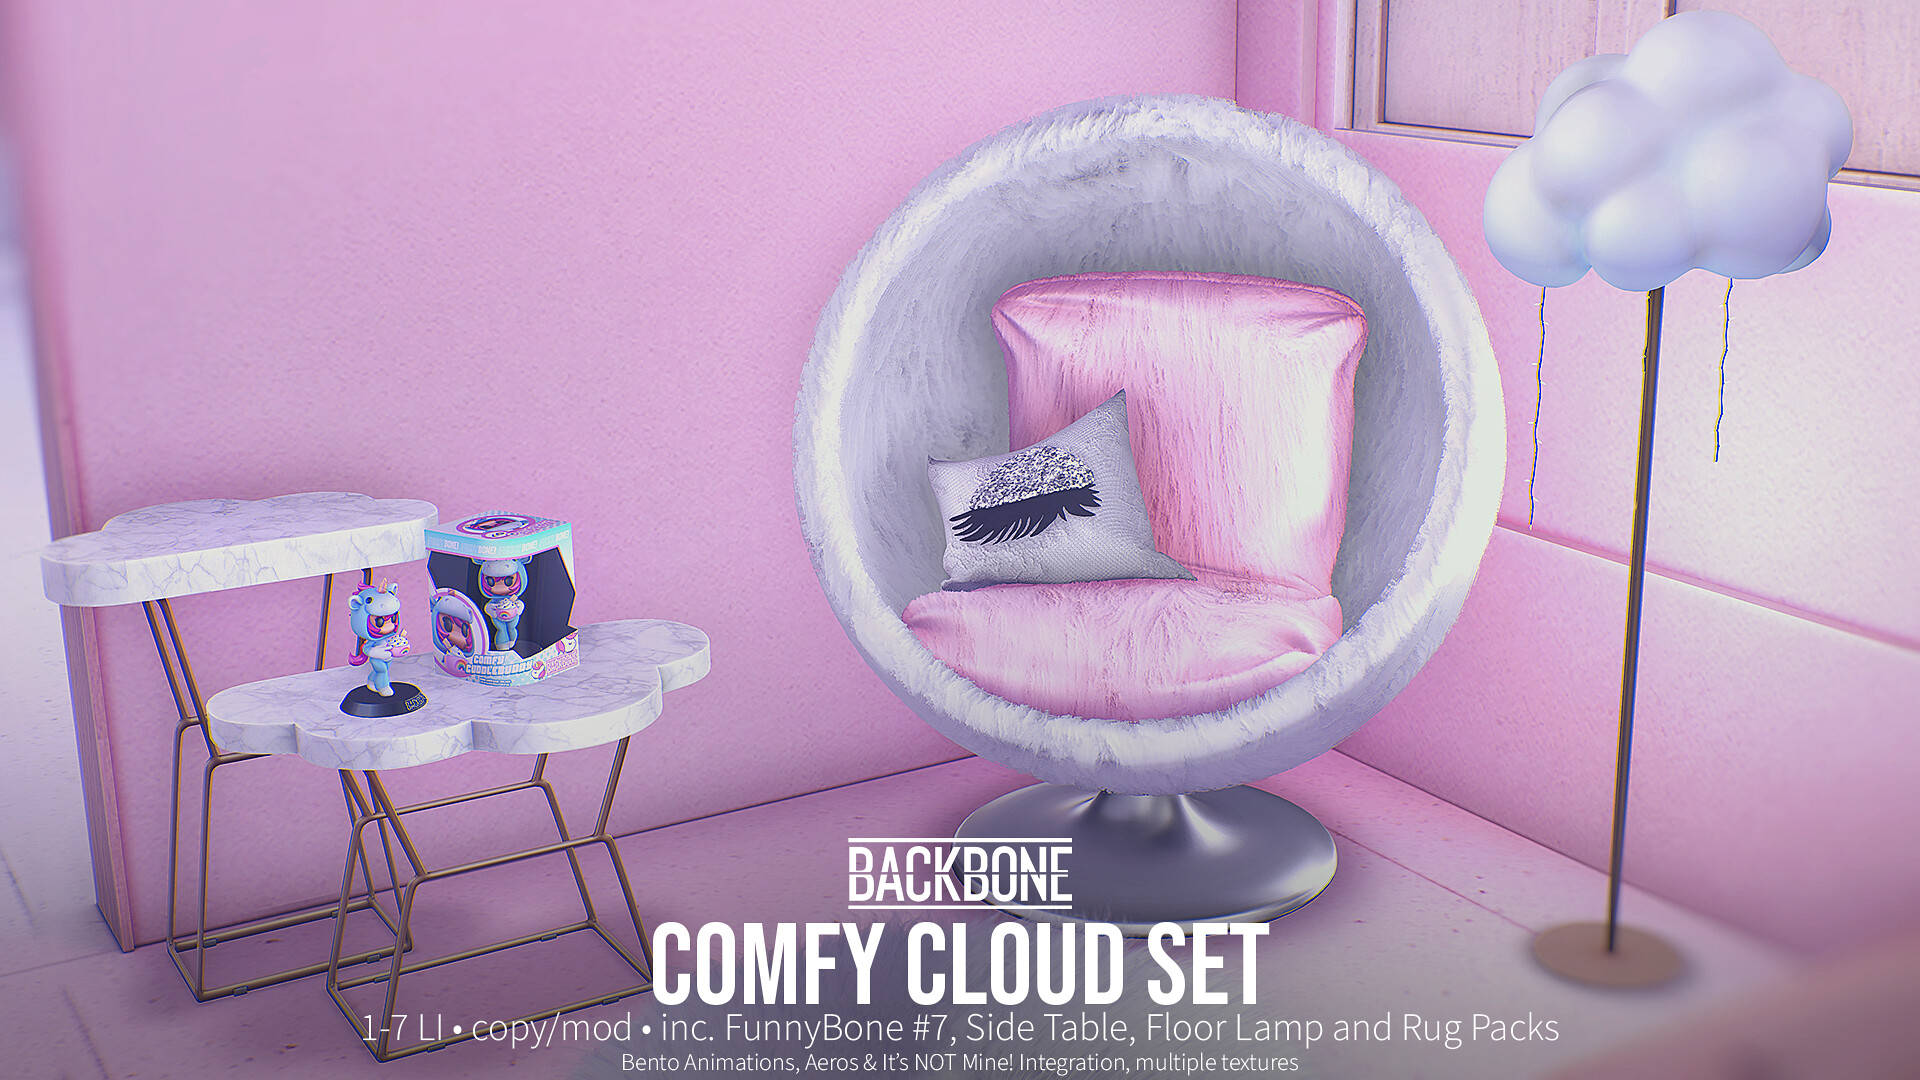 BackBone – Comfy Cloud Set